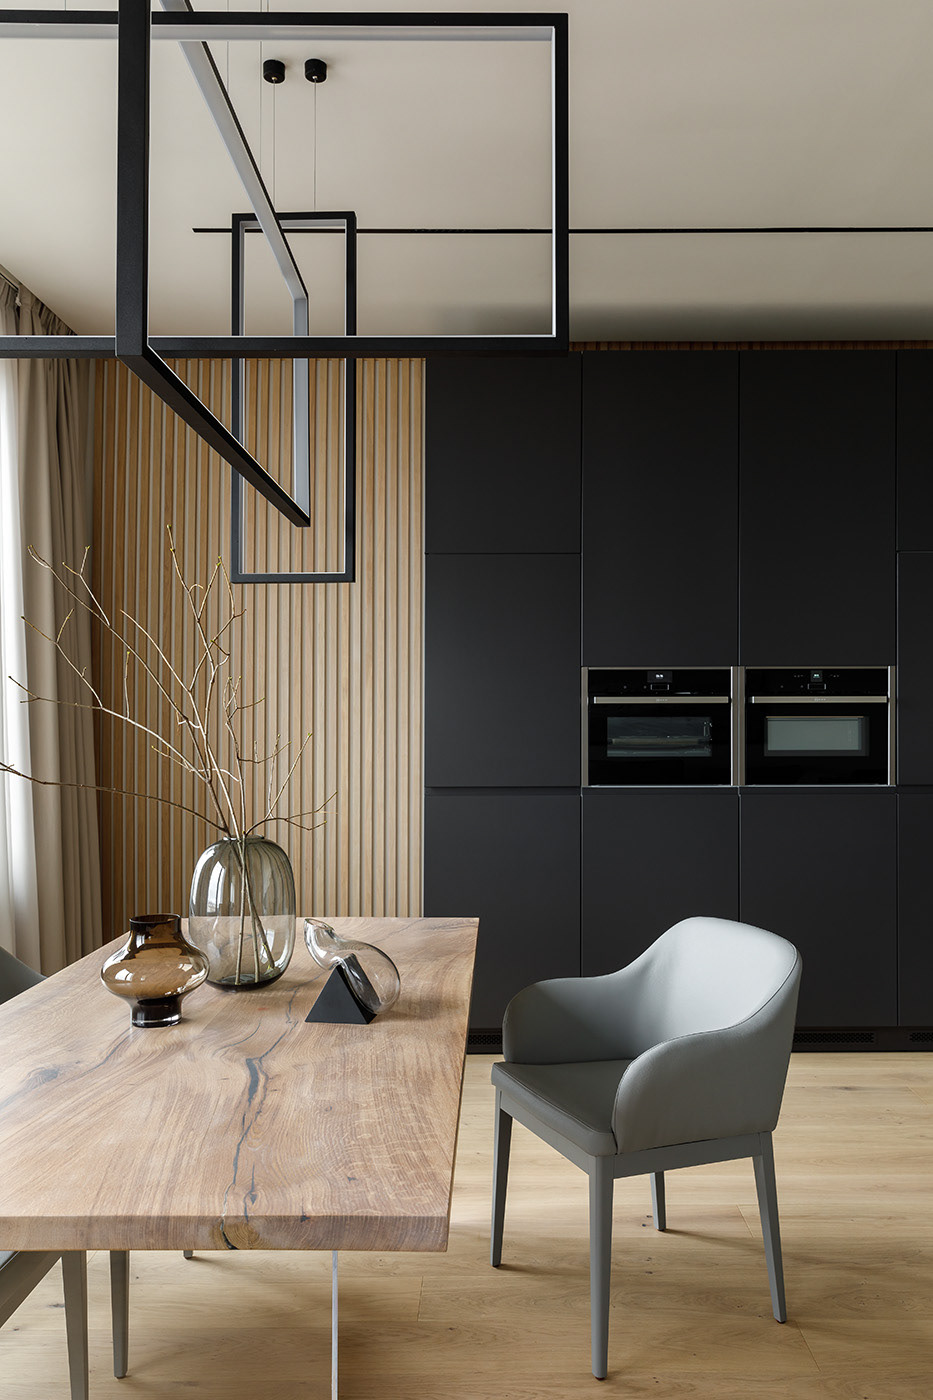 architecture design Interior interior design  kitchen гостиная   дизайн интерьера интерьер квартира кухня